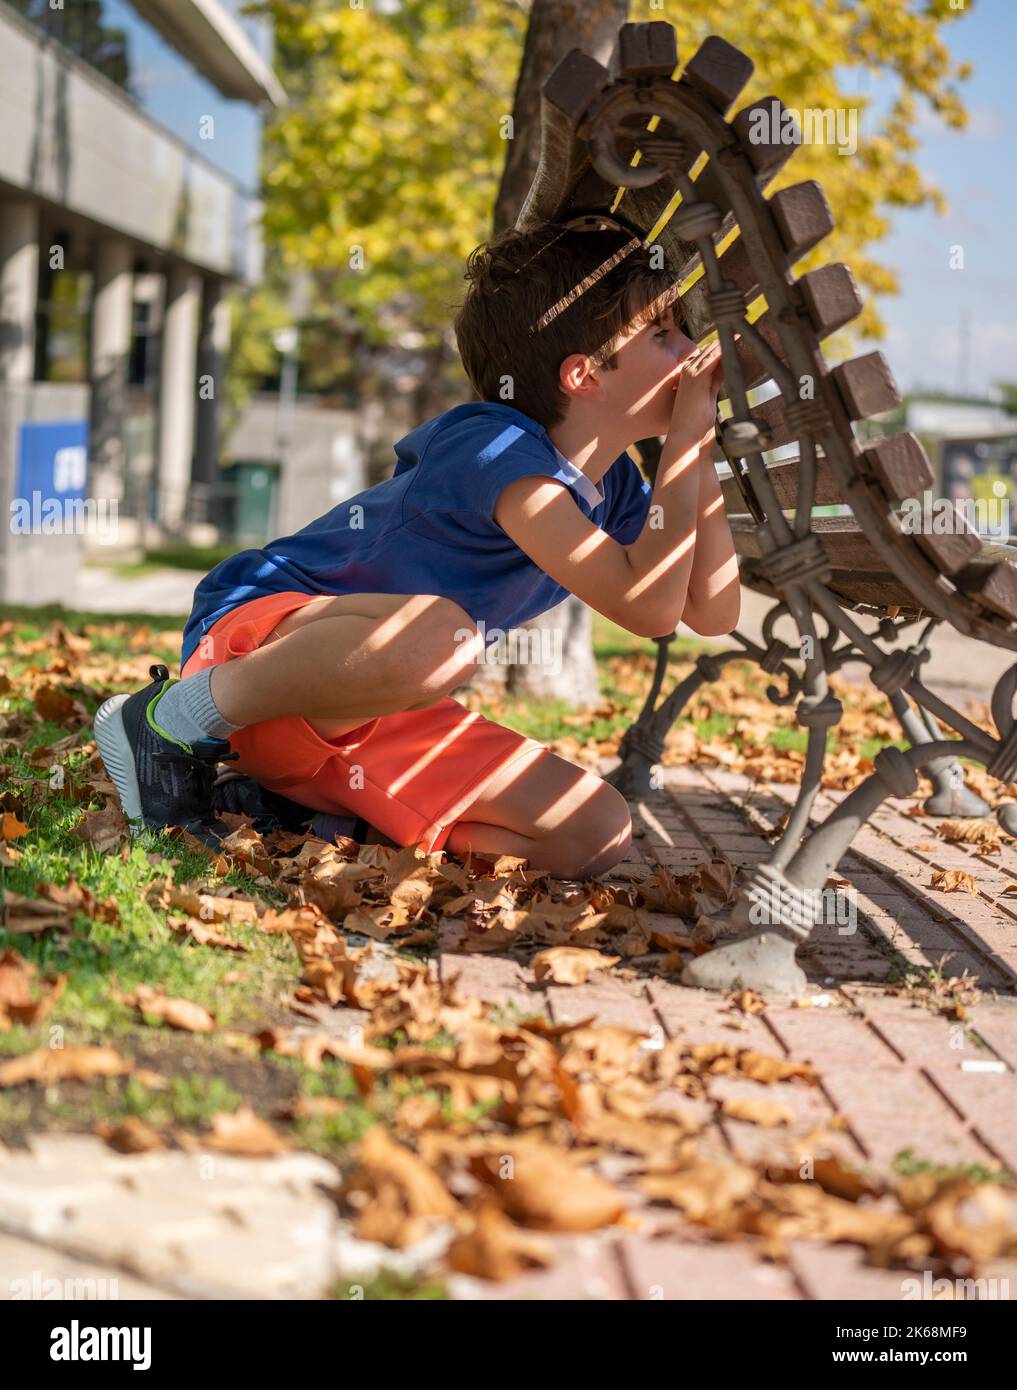 Junge spielt Verstecken und suchen. Blick durch eine Lücke in einer hölzernen Parkbank Stockfoto